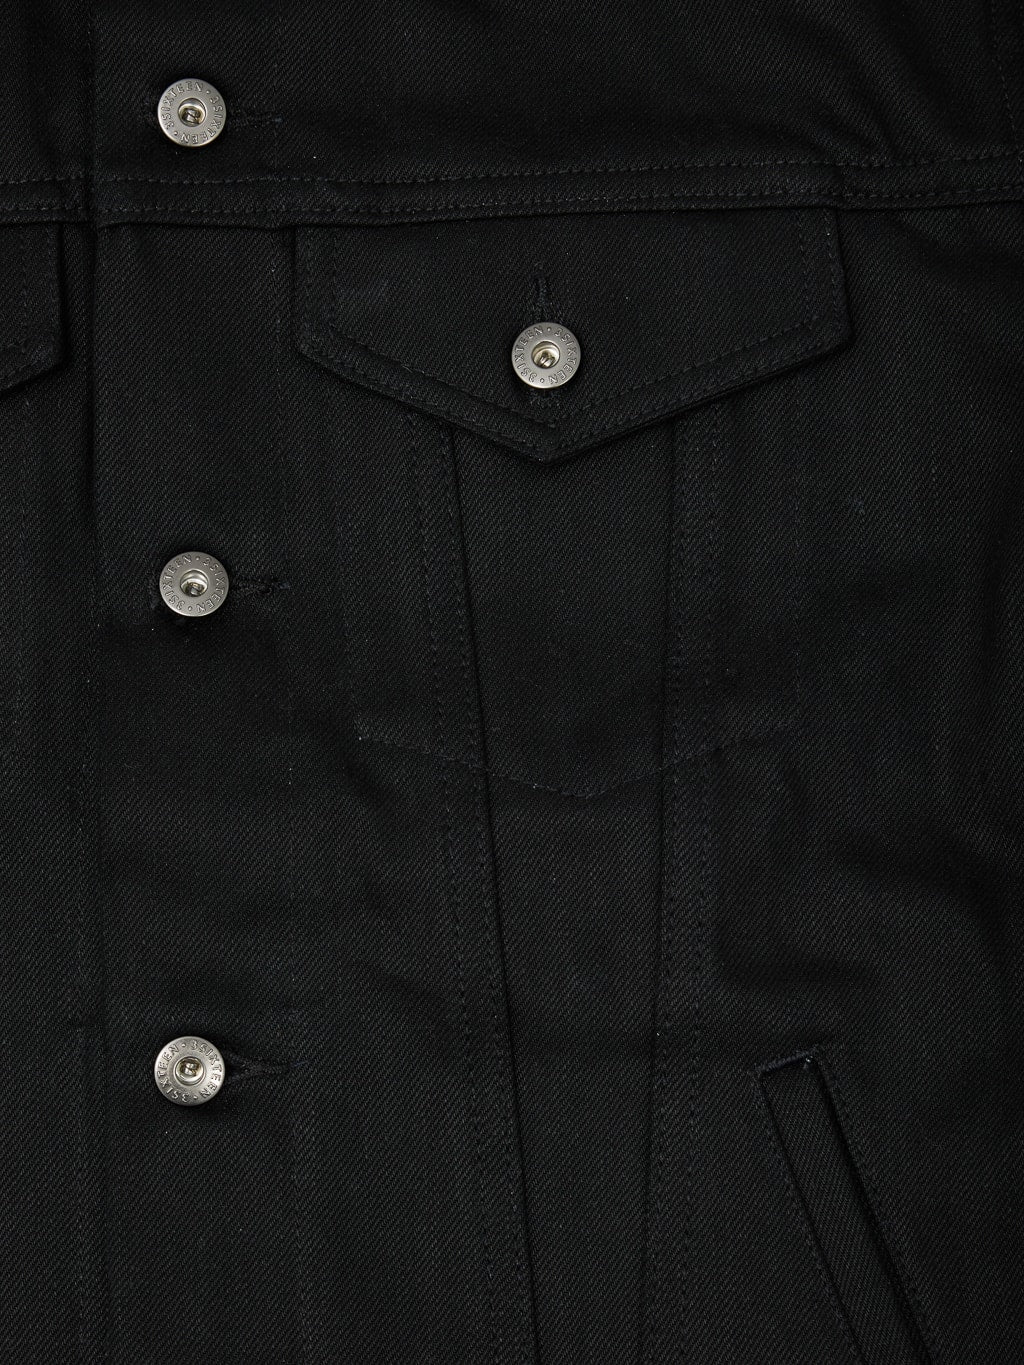 3sixteen type III denim jacket double black flap pocket chest